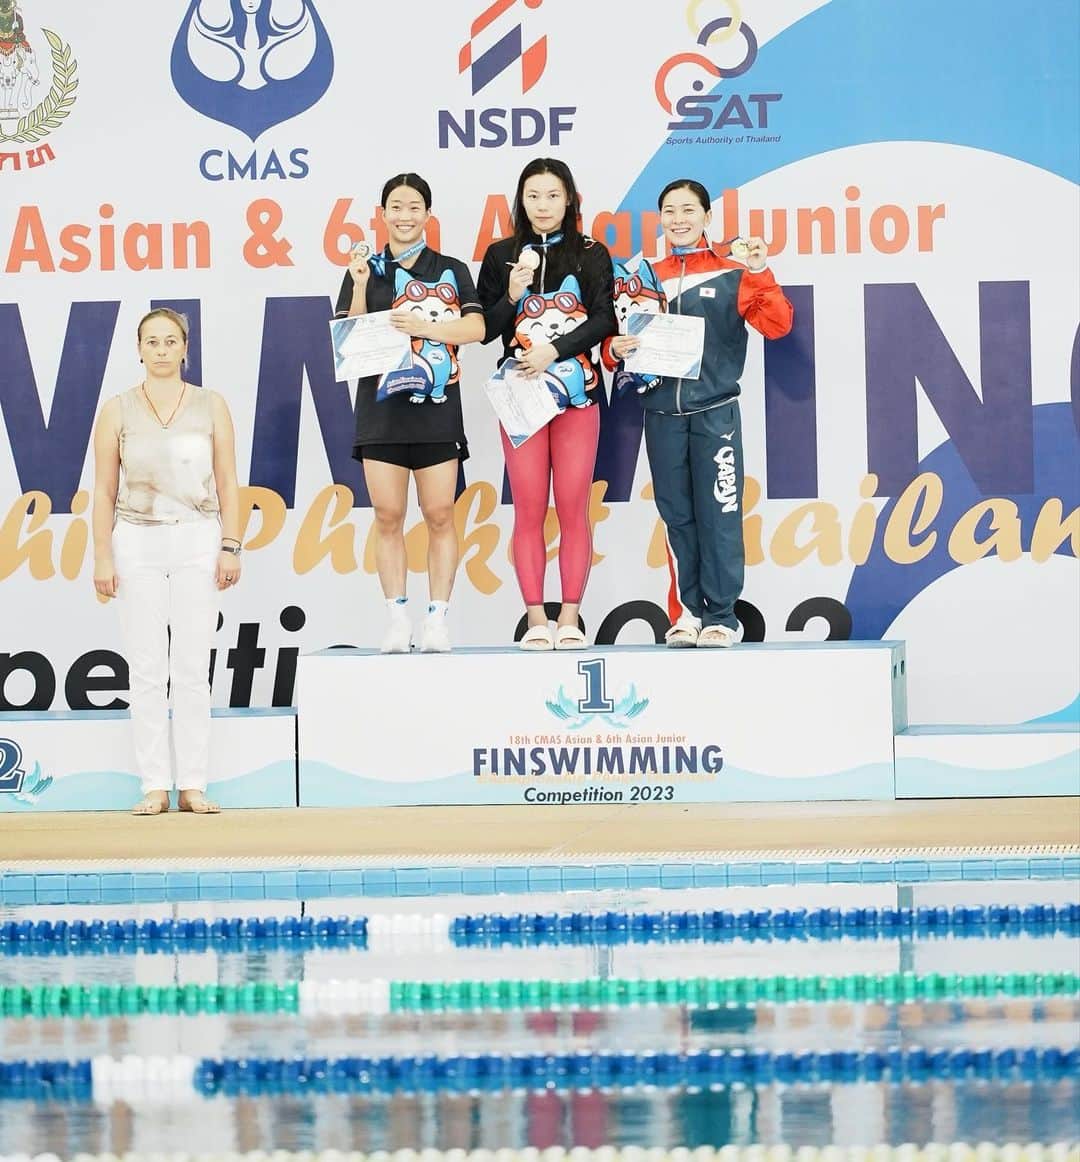 髙津奈々のインスタグラム：「18th CMAS Asian Finswimming Championship Phuket Thailand Competition 2023  ▶︎Result ・50m surface 18.30 🥉 自己ベスト&日本新記録樹立🎌 ・100m surface 41.80 4th place ・200m surface 1.36.62 4th place ・4×100m surface relay🥉  (第1泳者として41.52 自己ベスト&日本新記録樹立🎌) ・4×50m mix surface relay 4th place  たくさんのご声援、ありがとうございました。 無事にタイ・プーケットより帰国いたしましたので 結果をご報告させていただきます。  50mと100mで自己ベストを更新し、 日本記録を海外の地で更新できたことが今回自信になりました。  とはいえまだまだ欲しいタイムには到達できず、 まだまだ突き進んでゆくのみです！  これで今日現在 50m,100m,200m,400mサーフィスの 日本記録保持者となりました🇯🇵 残すは800mと1500mのみ。  現状の最善を尽くしたこの大会。 まだまだ目標に向かっての通過点だと再確認しました。  やらなくてはならないことが、 過去1番ではっきりとわかり大事な大会になりました。  現状に目を向け、 しっかりと取り組んでいきたいと思います。  世界で戦います。  引き続きどうぞ応援よろしくお願いいたします🙇‍♀️  #finswimming #asianchampionship  #アジア選手権　 #メダリスト  #日本代表 #日本記録樹立 #アスリート #フィンスイミング #スポンサー募集 #協賛企業募集  #所属先募集」